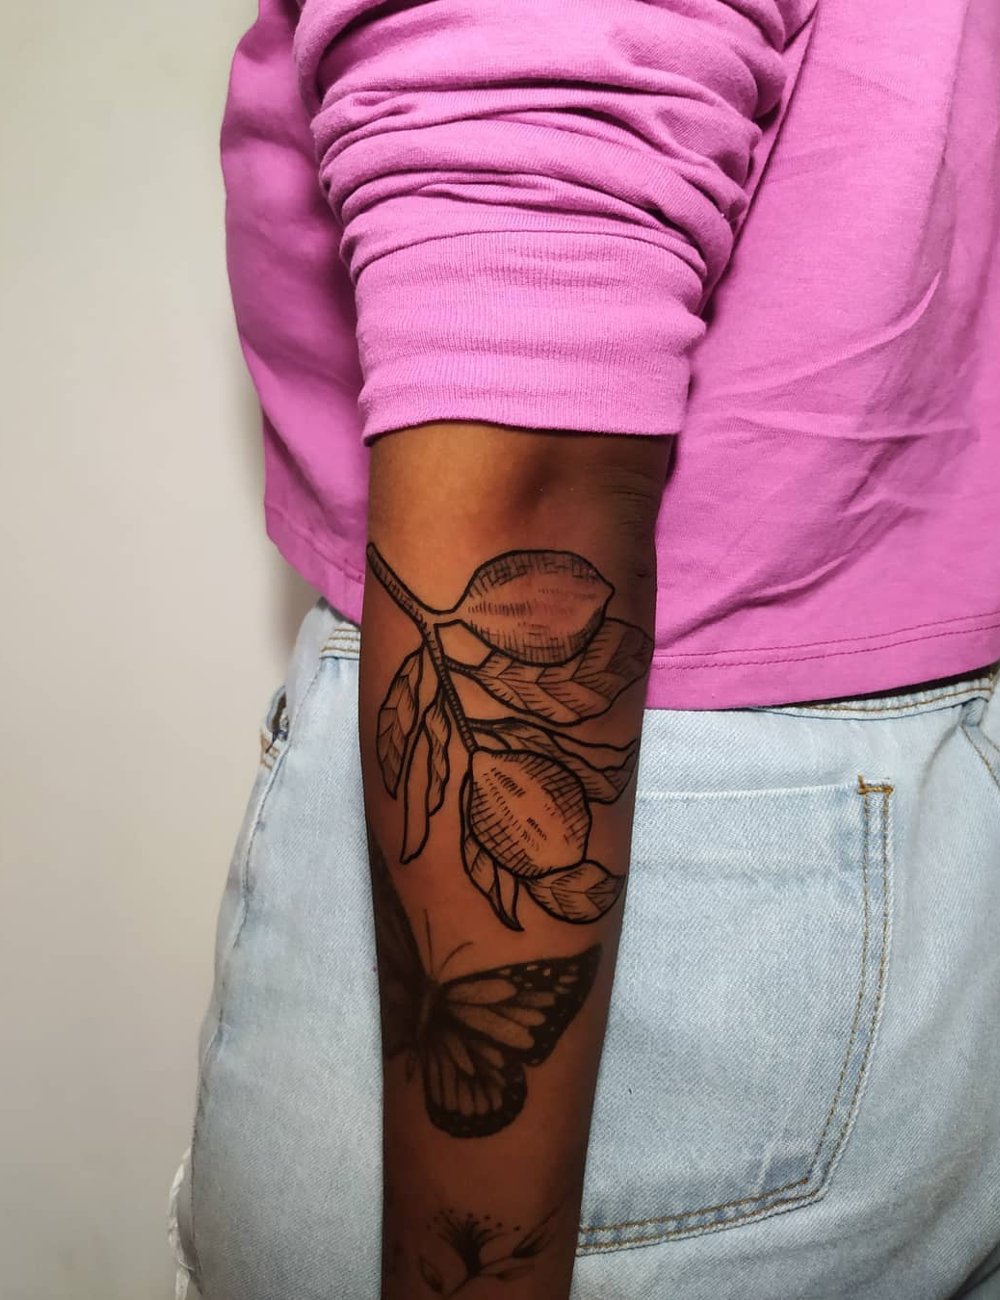 Karen Merilyn - tattoo - tatuagem em pele negra - inspiração - pele - https://stealthelook.com.br